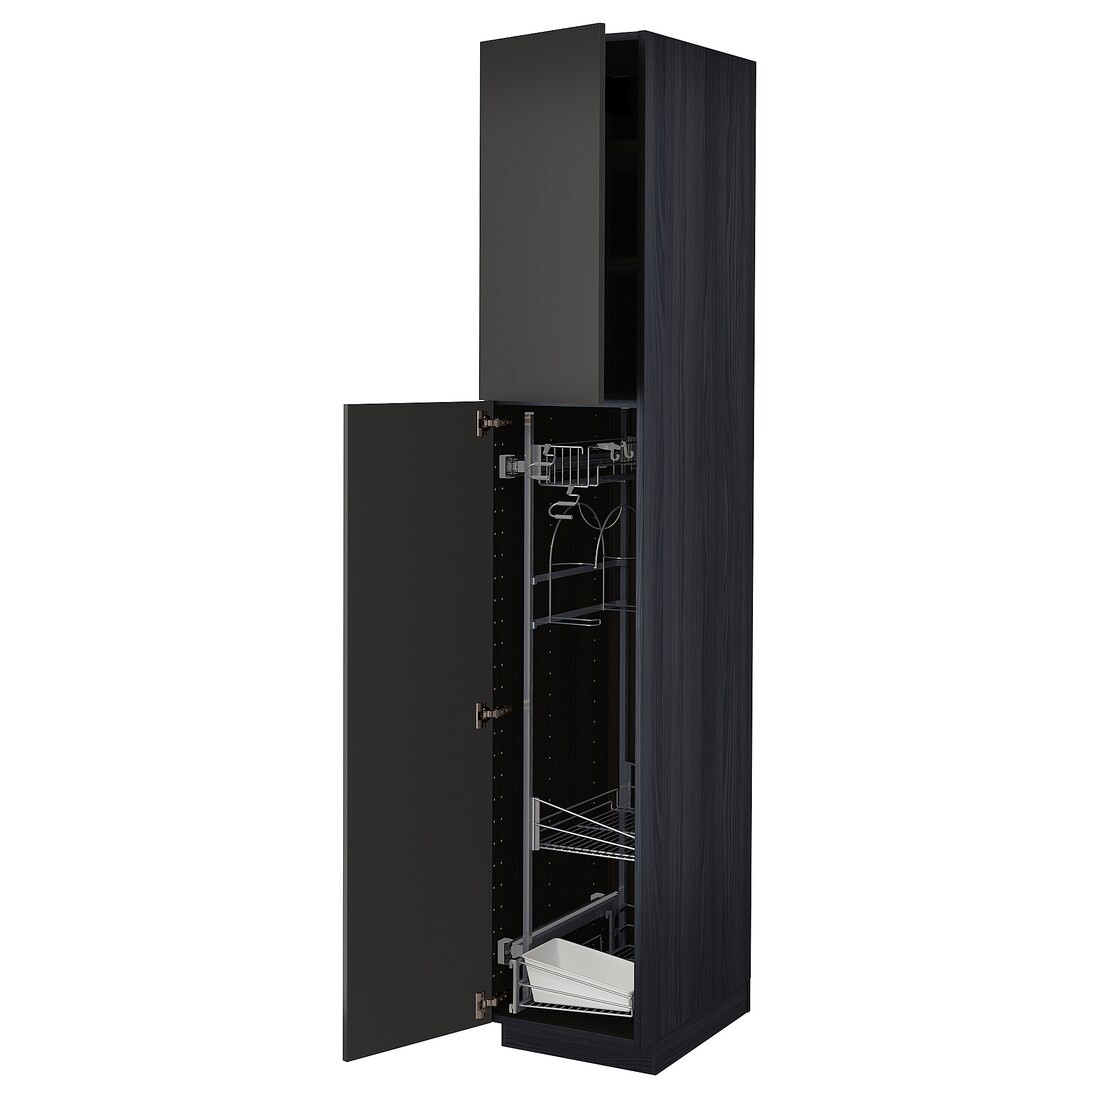 METOD МЕТОД Высокий шкаф с отделением для аксессуаров для уборки, черный / Nickebo матовый антрацит, 40x60x220 см